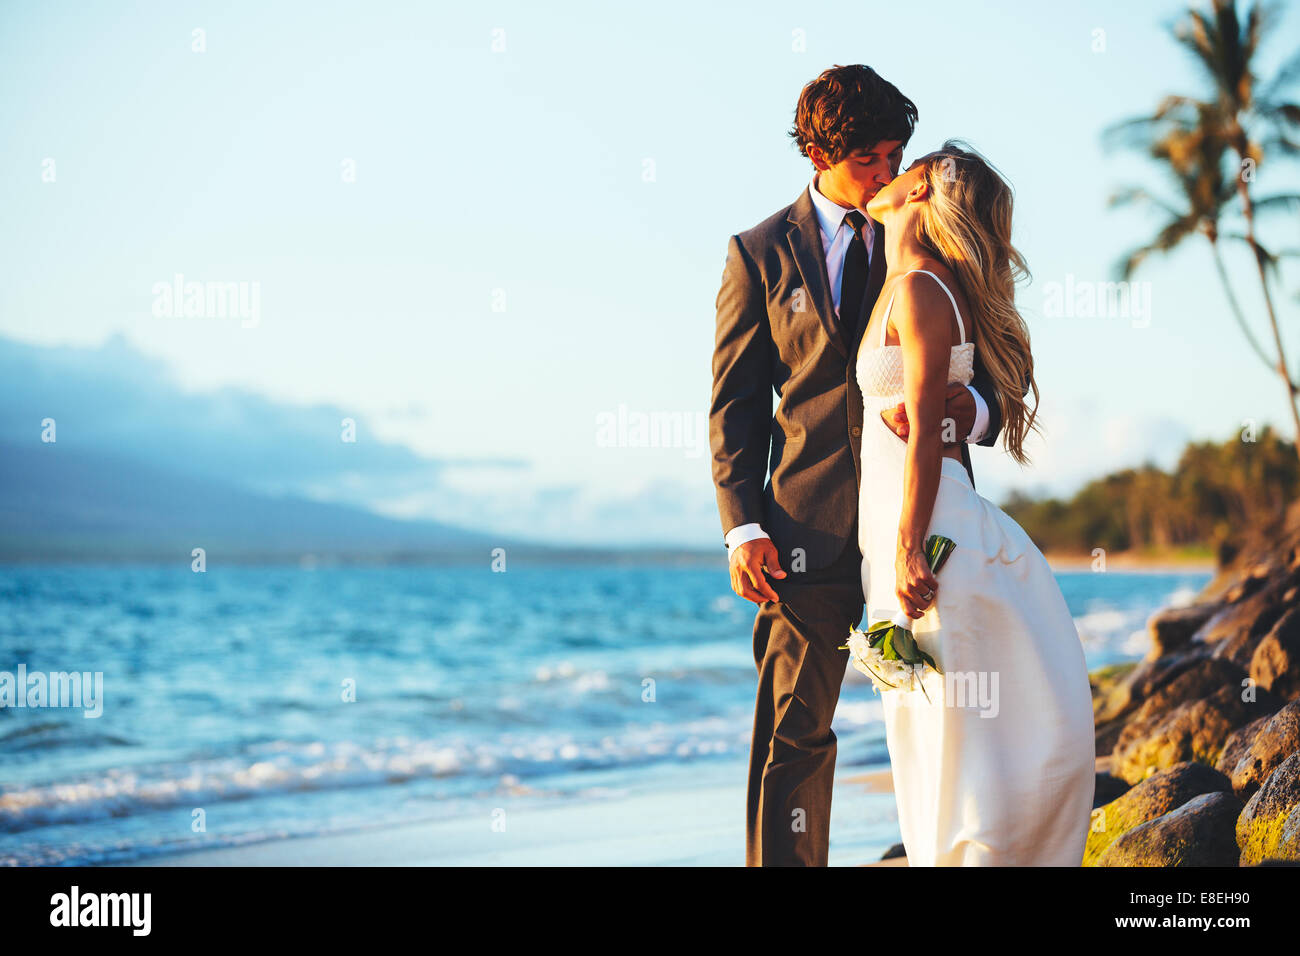 Matrimonio romantico giovane baciare sulla spiaggia al tramonto Foto Stock